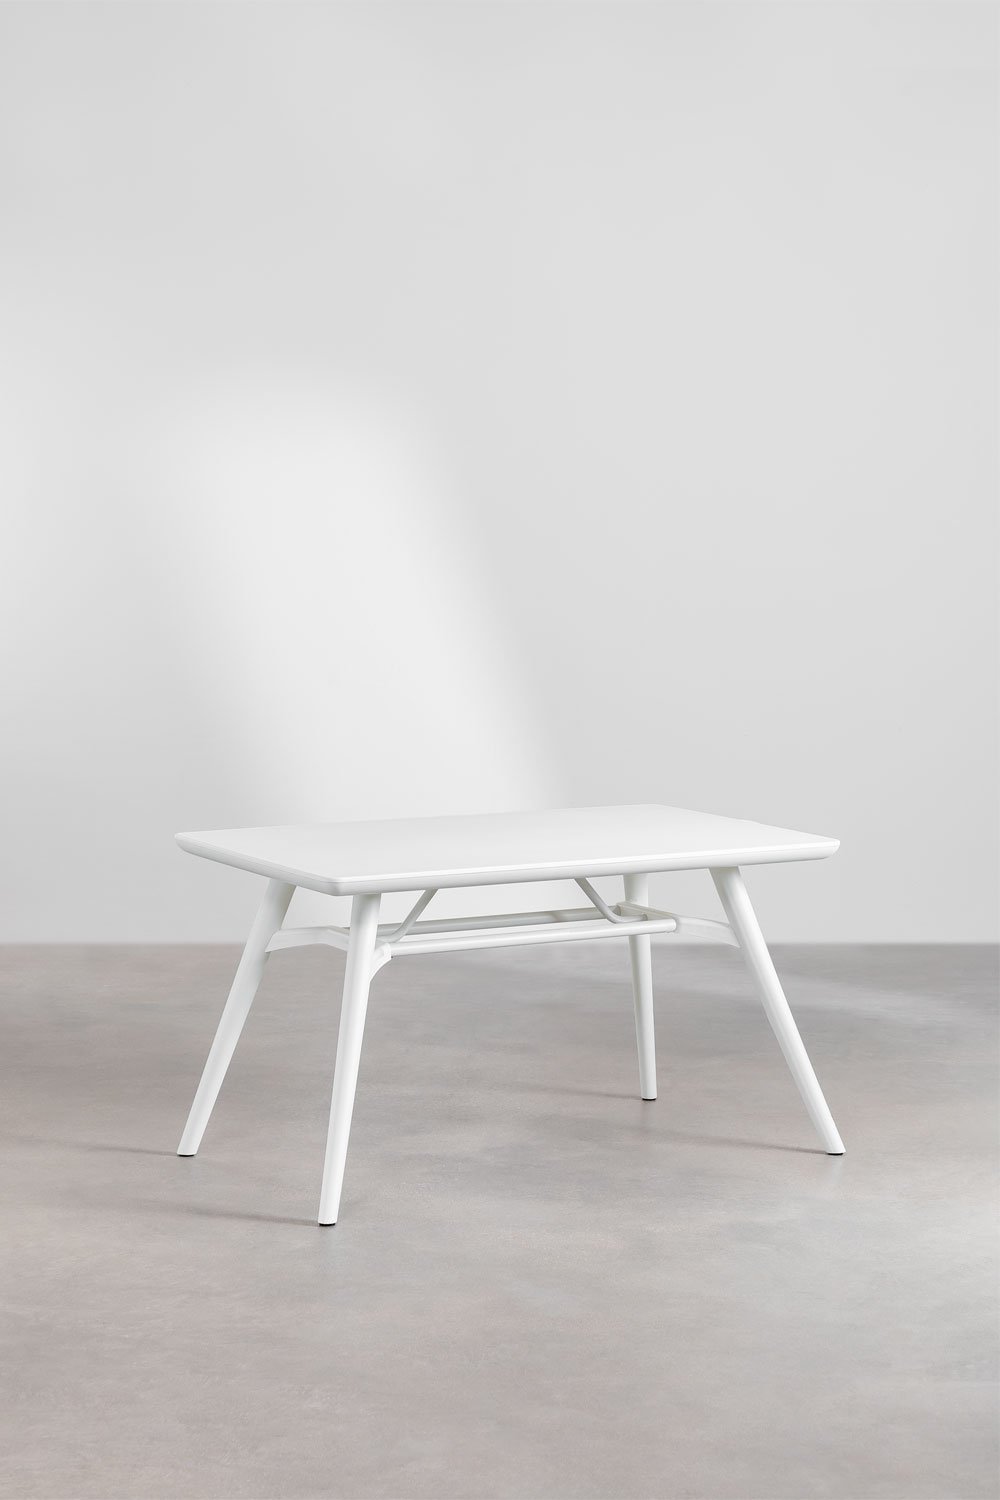 Table à manger rectangulaire (134x78 cm) Joane, image de la galerie 1